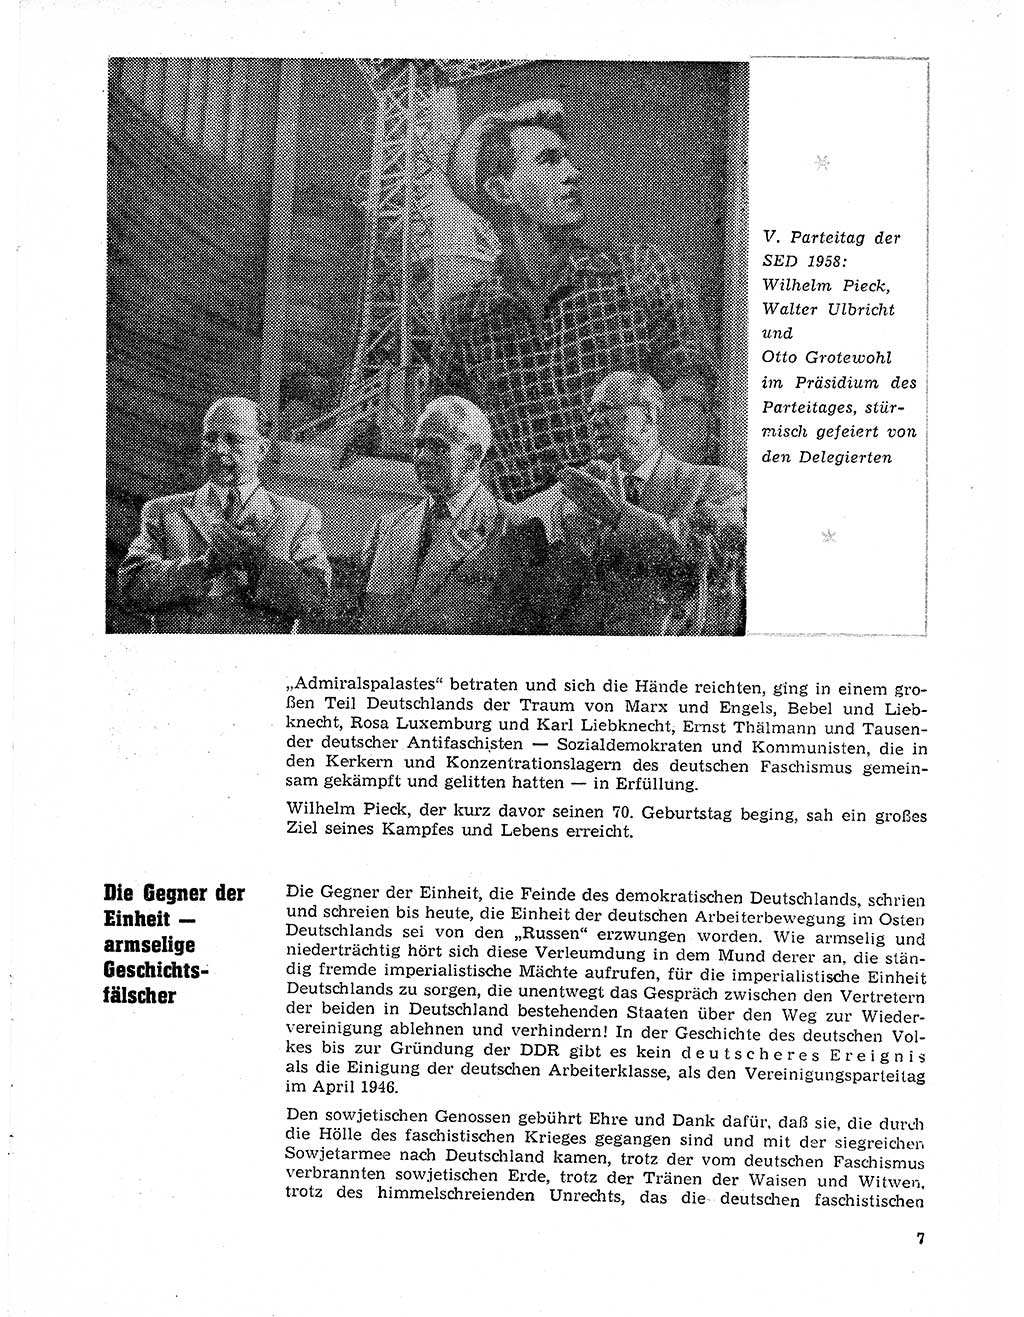 Neuer Weg (NW), Organ des Zentralkomitees (ZK) der SED (Sozialistische Einheitspartei Deutschlands) für Fragen des Parteilebens, 21. Jahrgang [Deutsche Demokratische Republik (DDR)] 1966, Seite 7 (NW ZK SED DDR 1966, S. 7)